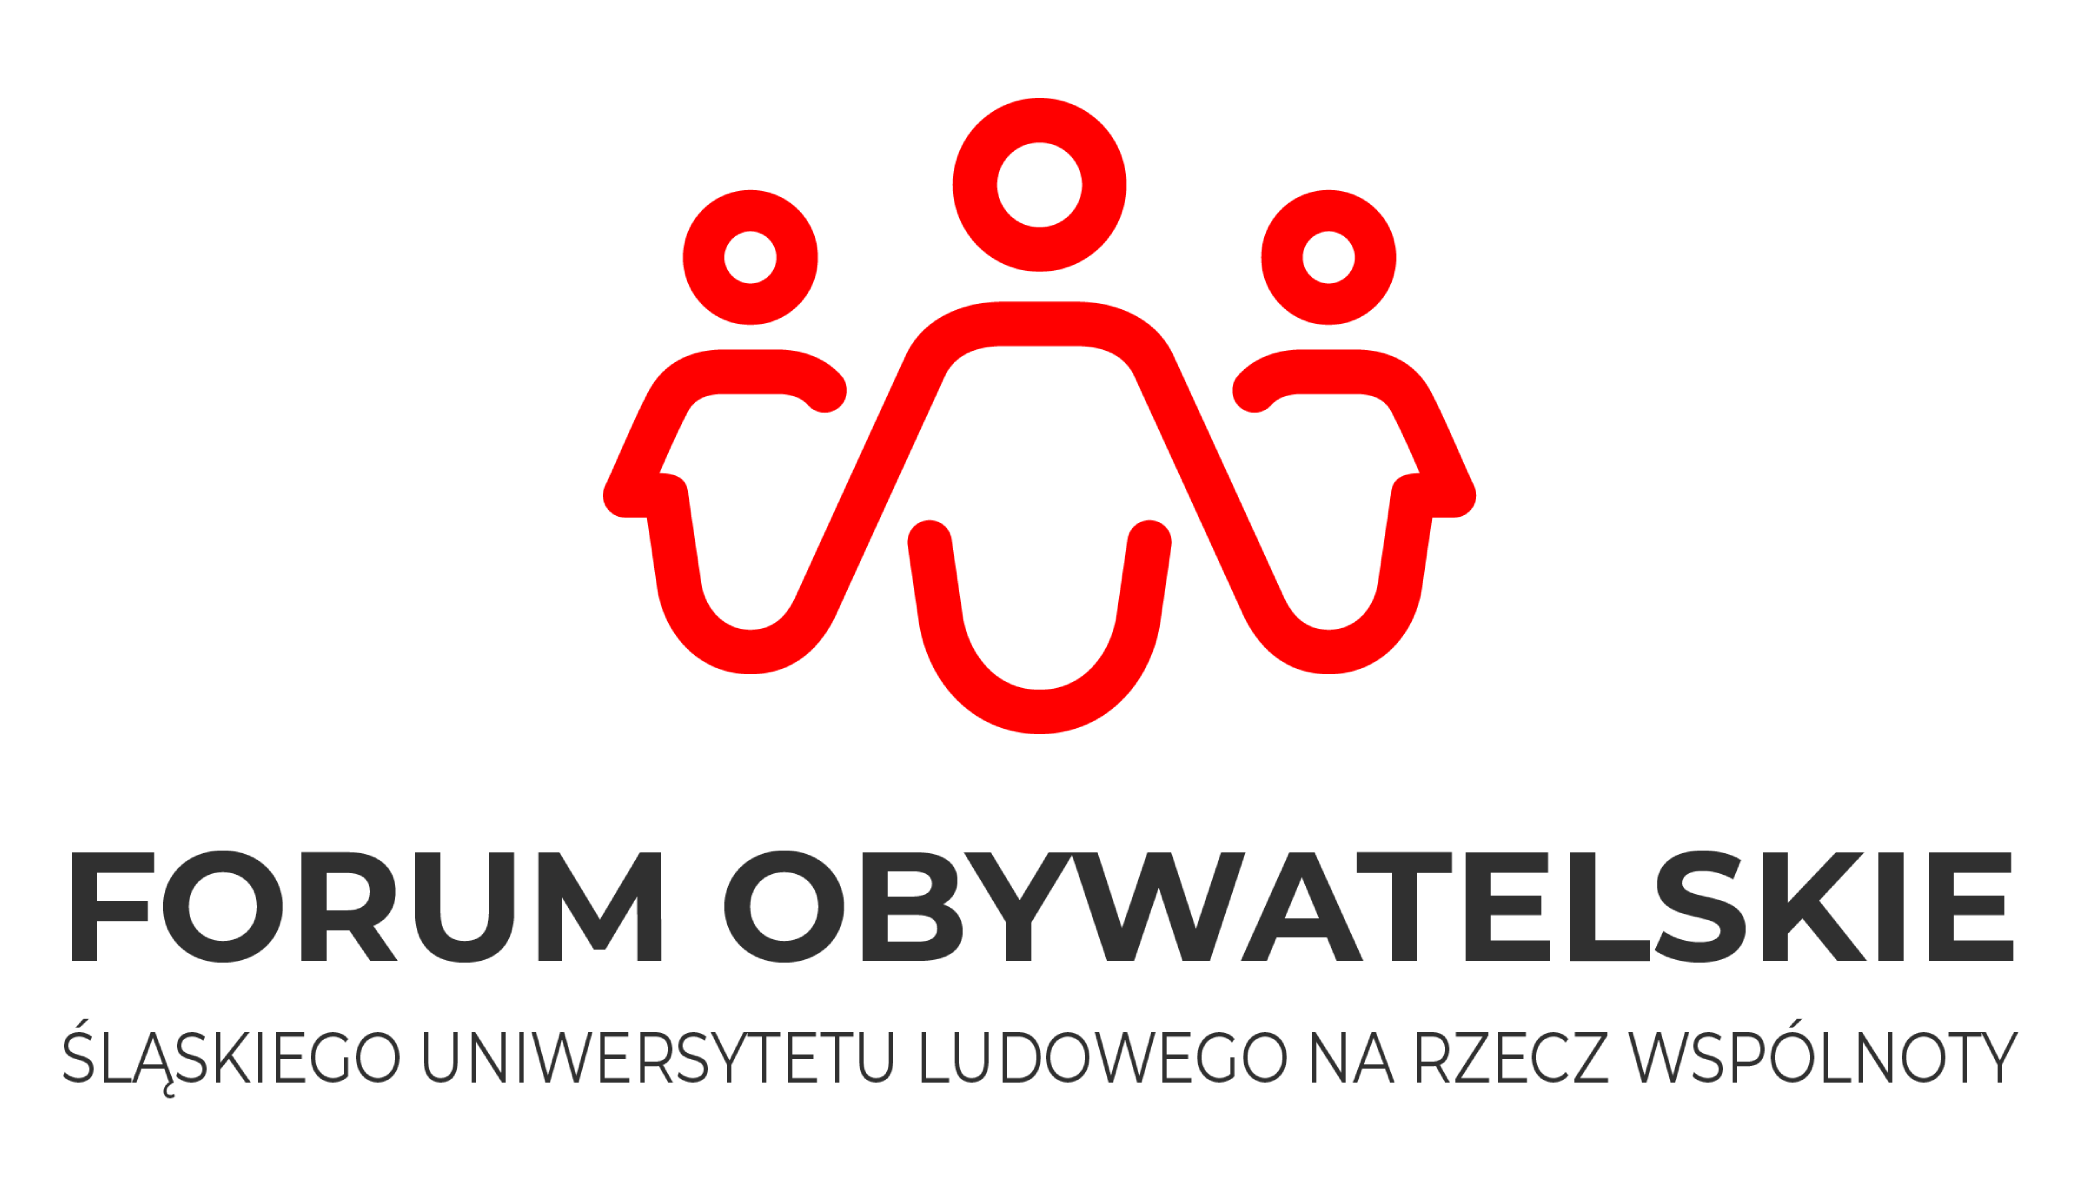 Forum obywatelskie Śląskiego Uniwersytetu Ludowego na rzecz wspólnoty